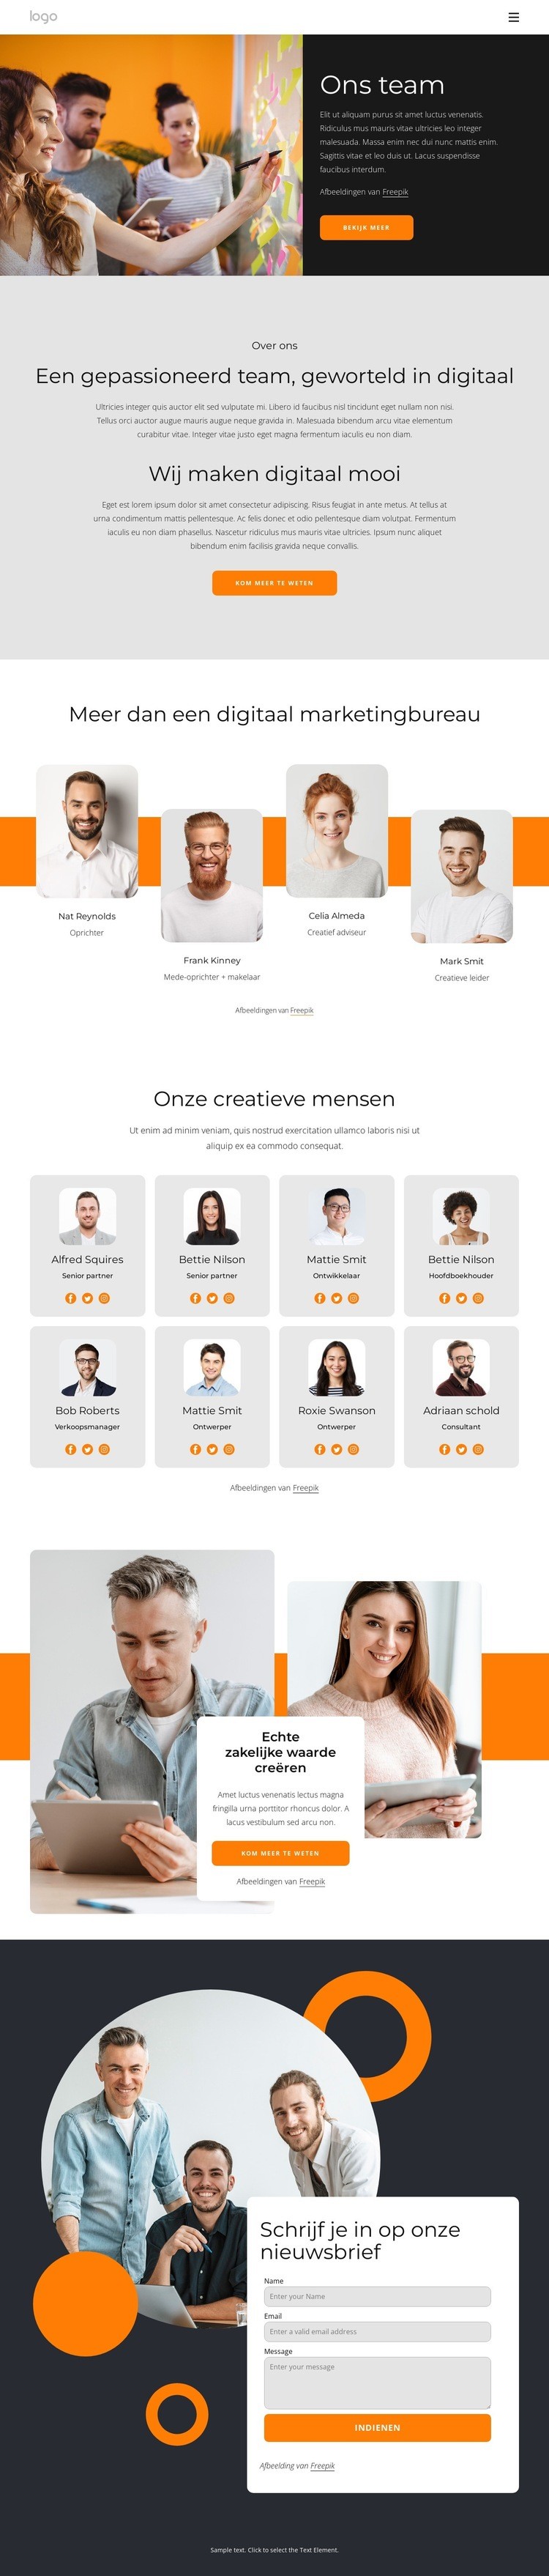 We zijn creatieve mensen met grote dromen HTML5-sjabloon